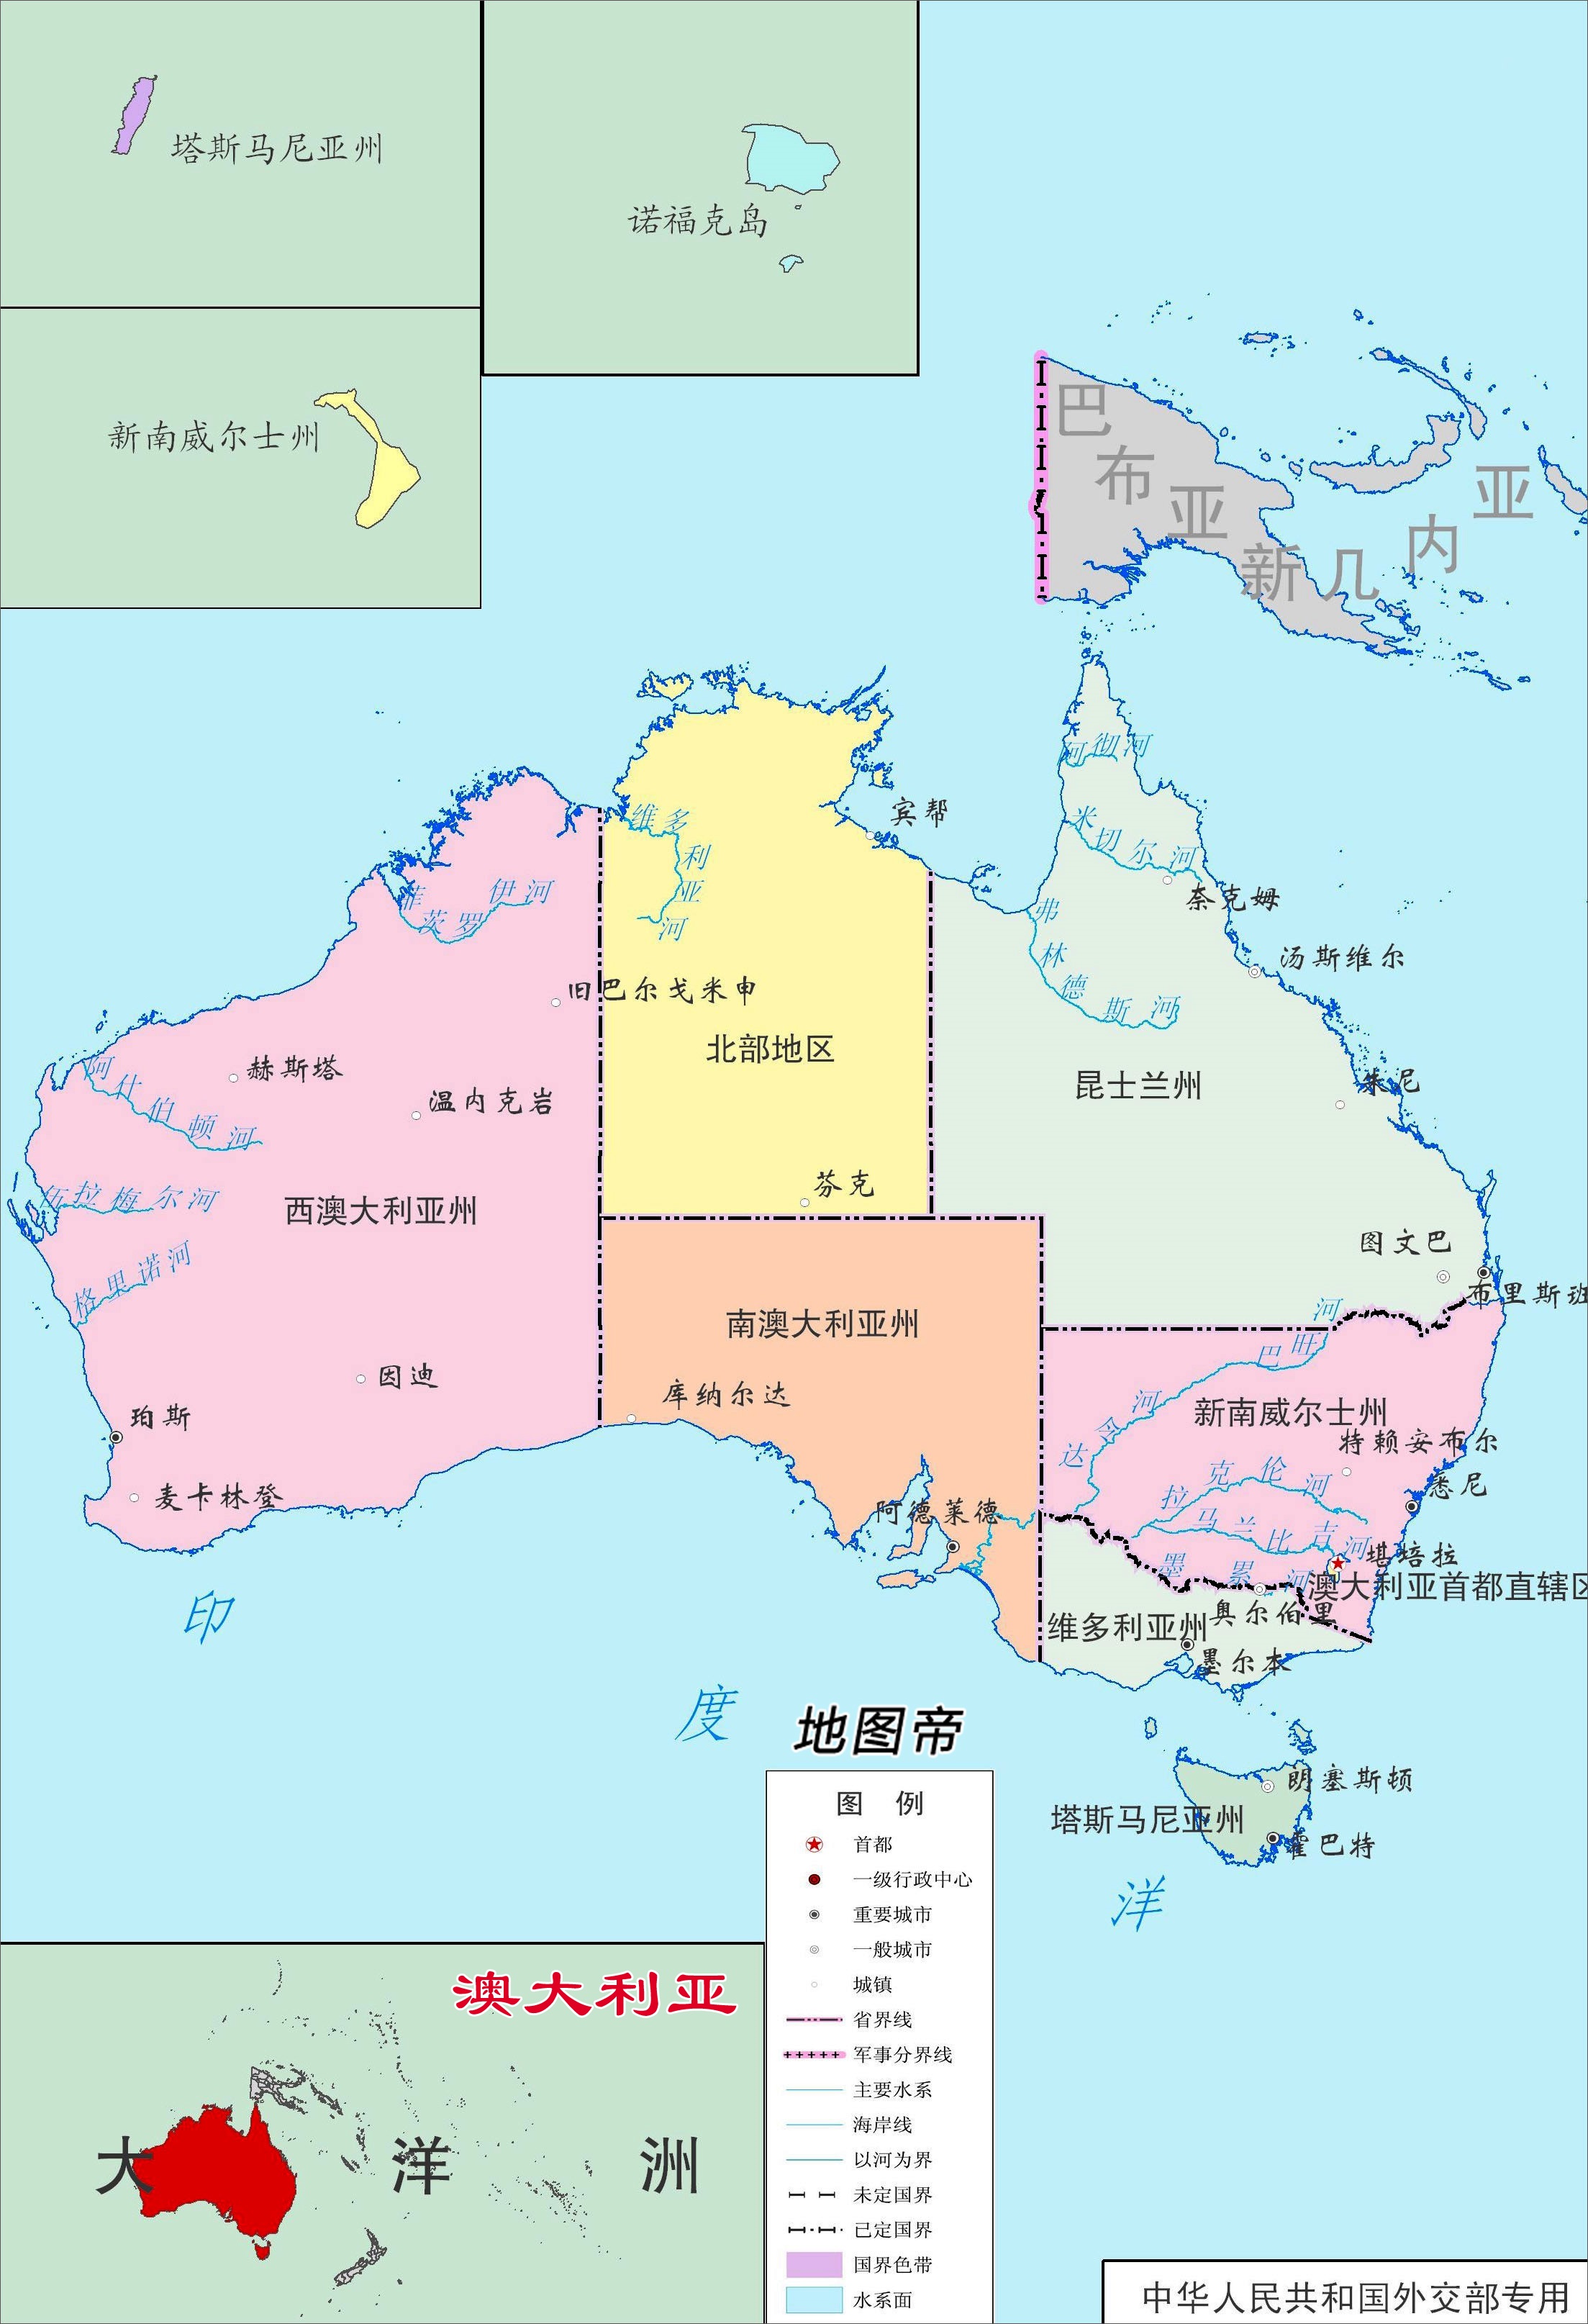 澳大利亚面积769万平方公里,为何只有8个省级行政区?